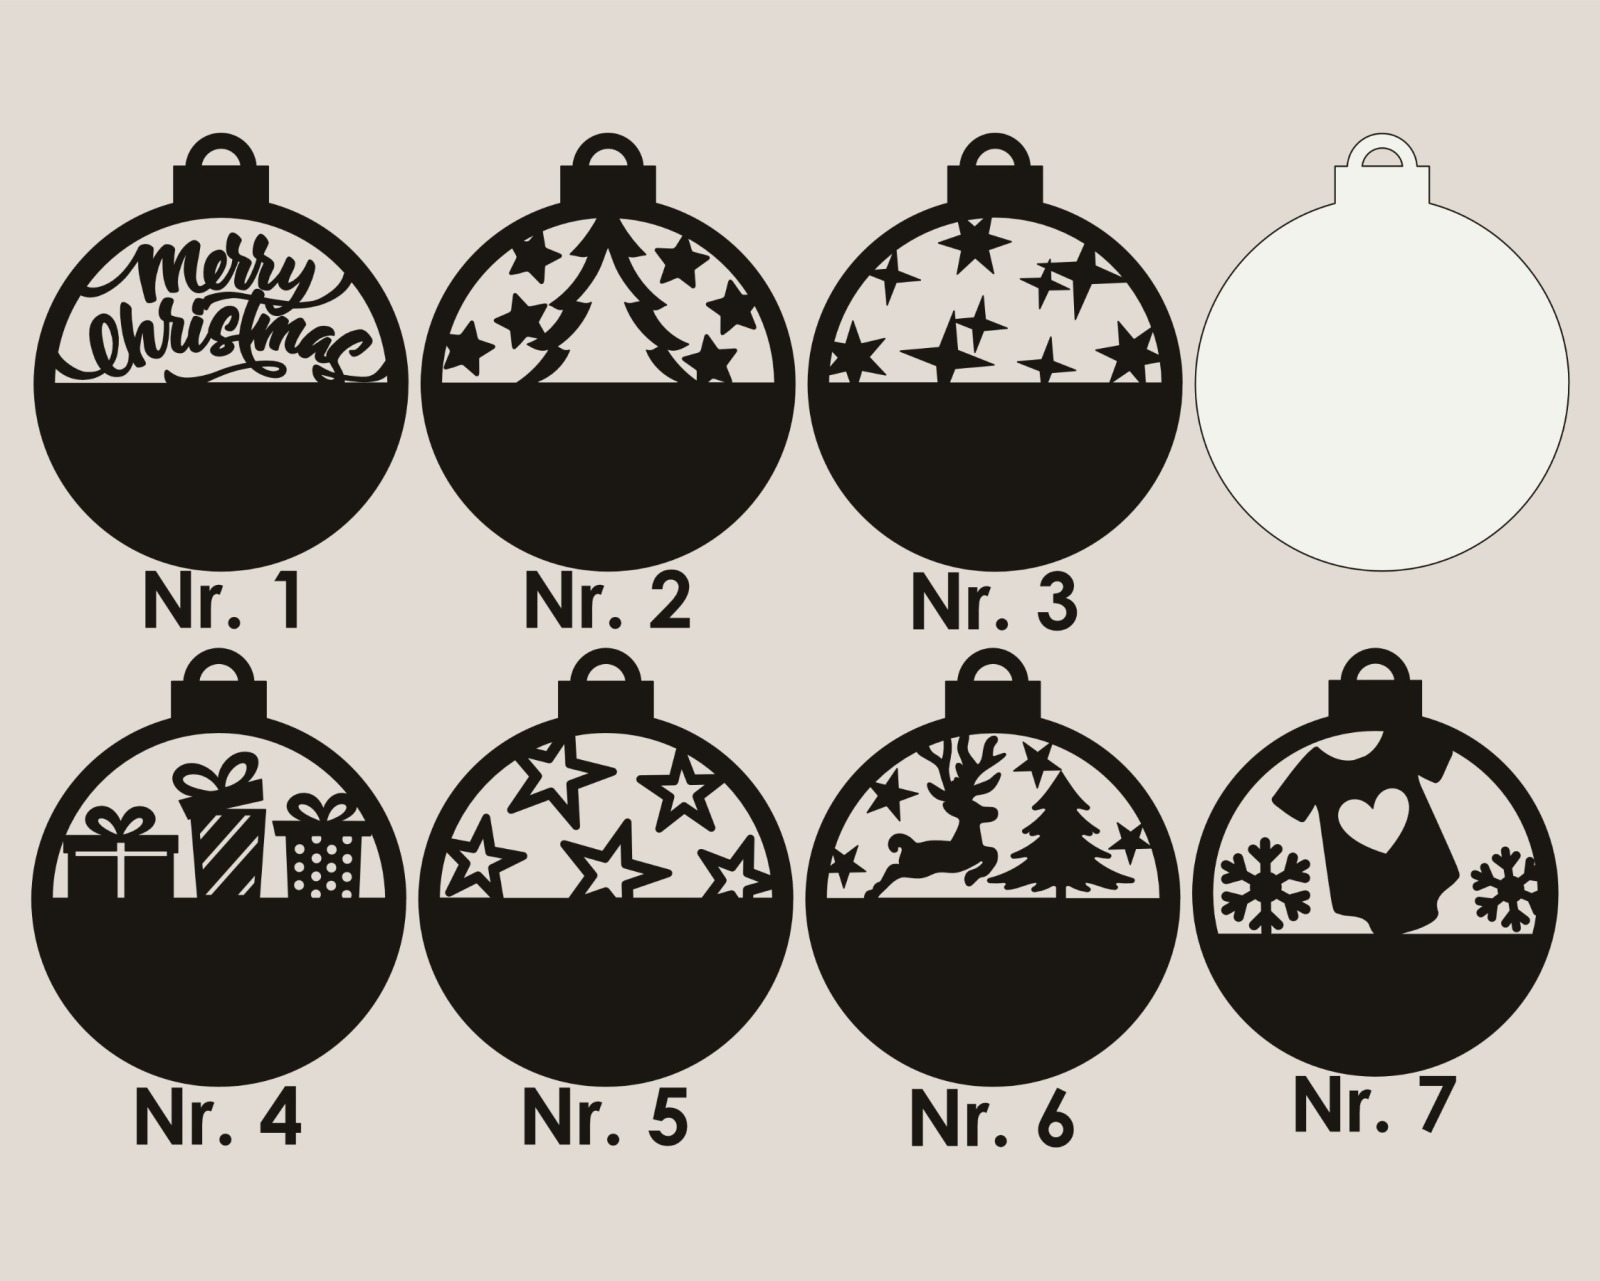 Personalisierte, individuelle Weihnachtsornamente für eine einzigartige Weihnachtsbaumdekoration 15